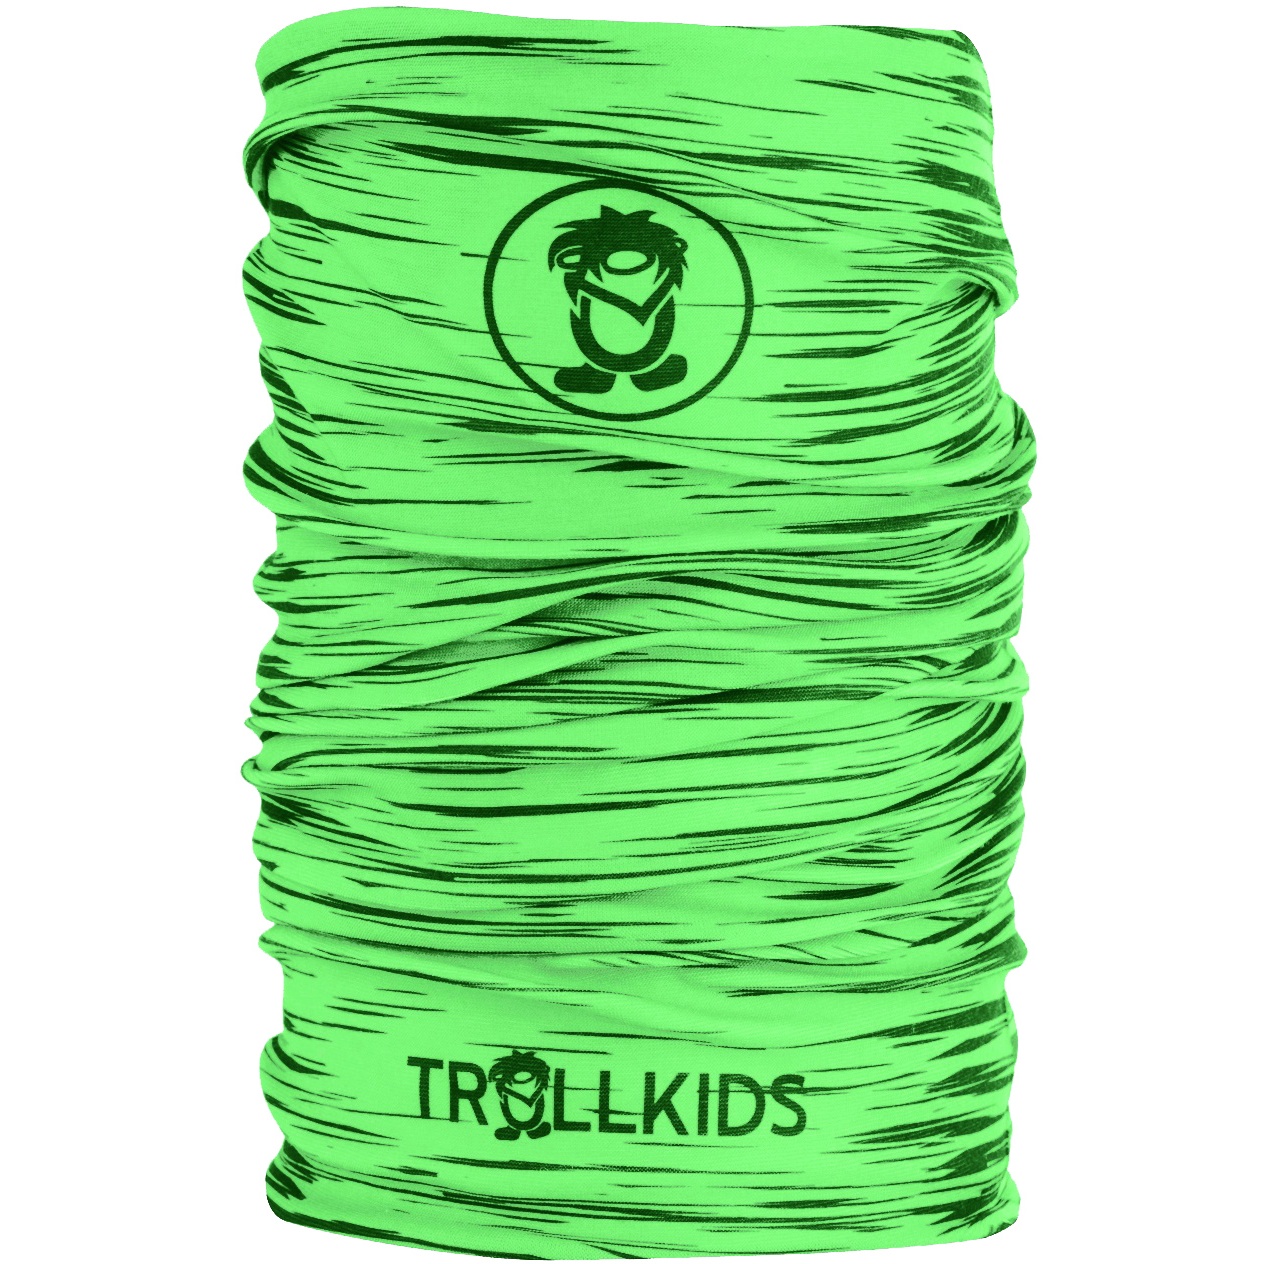 Produktbild von Trollkids Troll Kinder Multifunktionstuch - Dark Green/Light Green